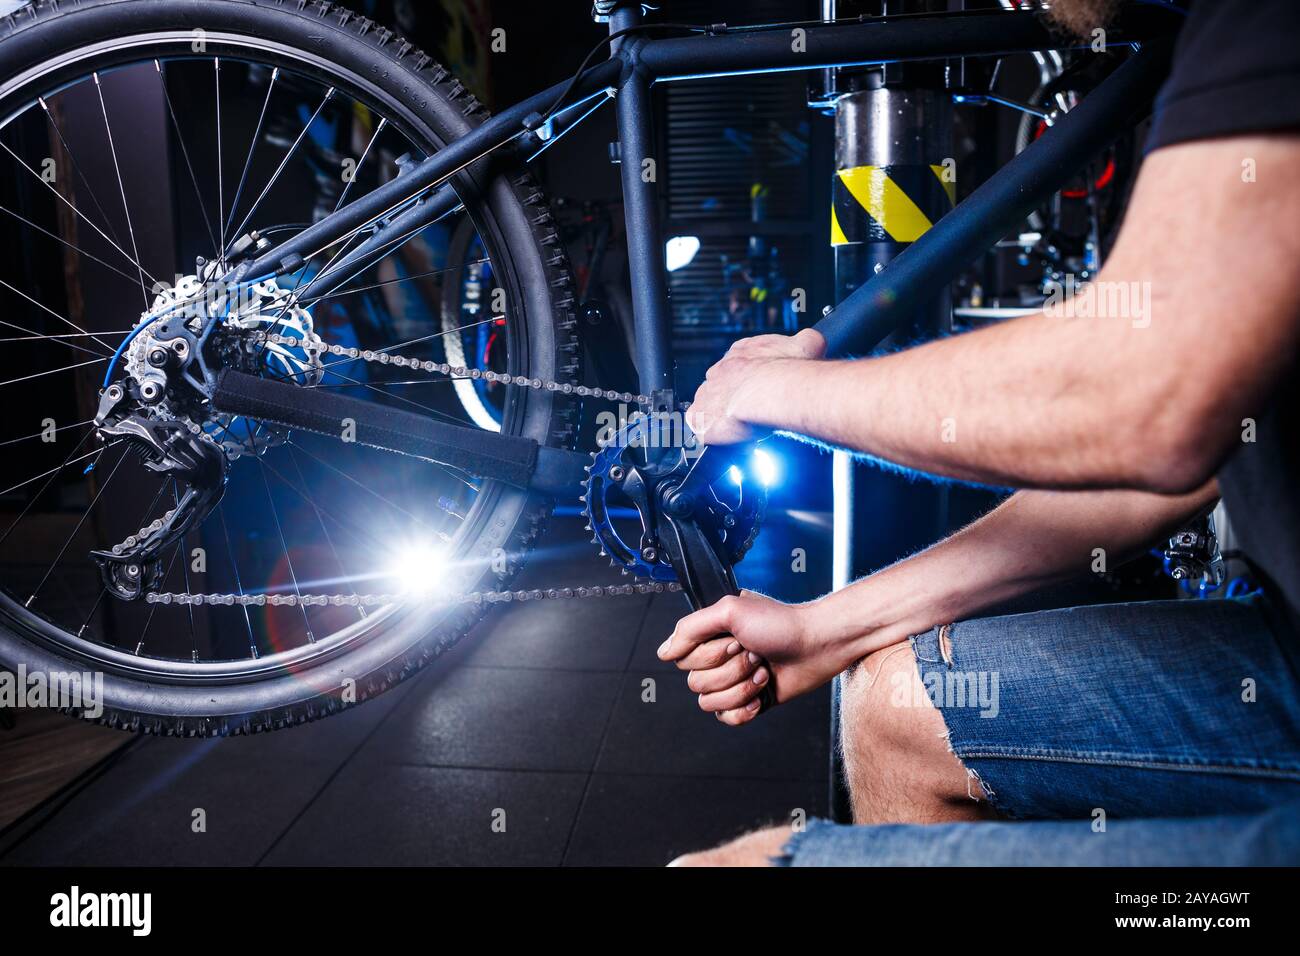 Primo piano delle mani dell'uomo la meccanica della bicicletta nel negozio usa l'istment per regolare e riparare il gruppo della pedivella della bicicletta, la cha della bicicletta Foto Stock